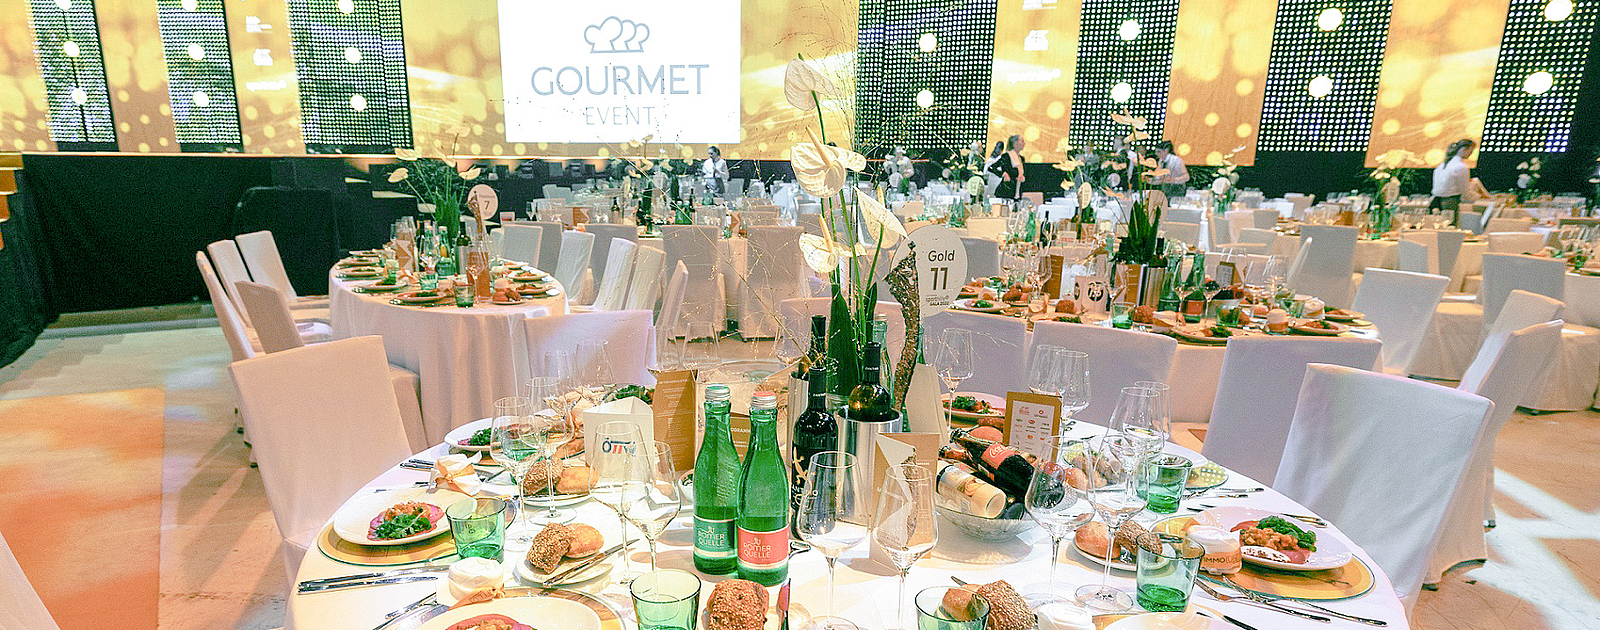 GOURMET Event bereitete ein exquisites Menü für rund 1.500 Gäste zu. 